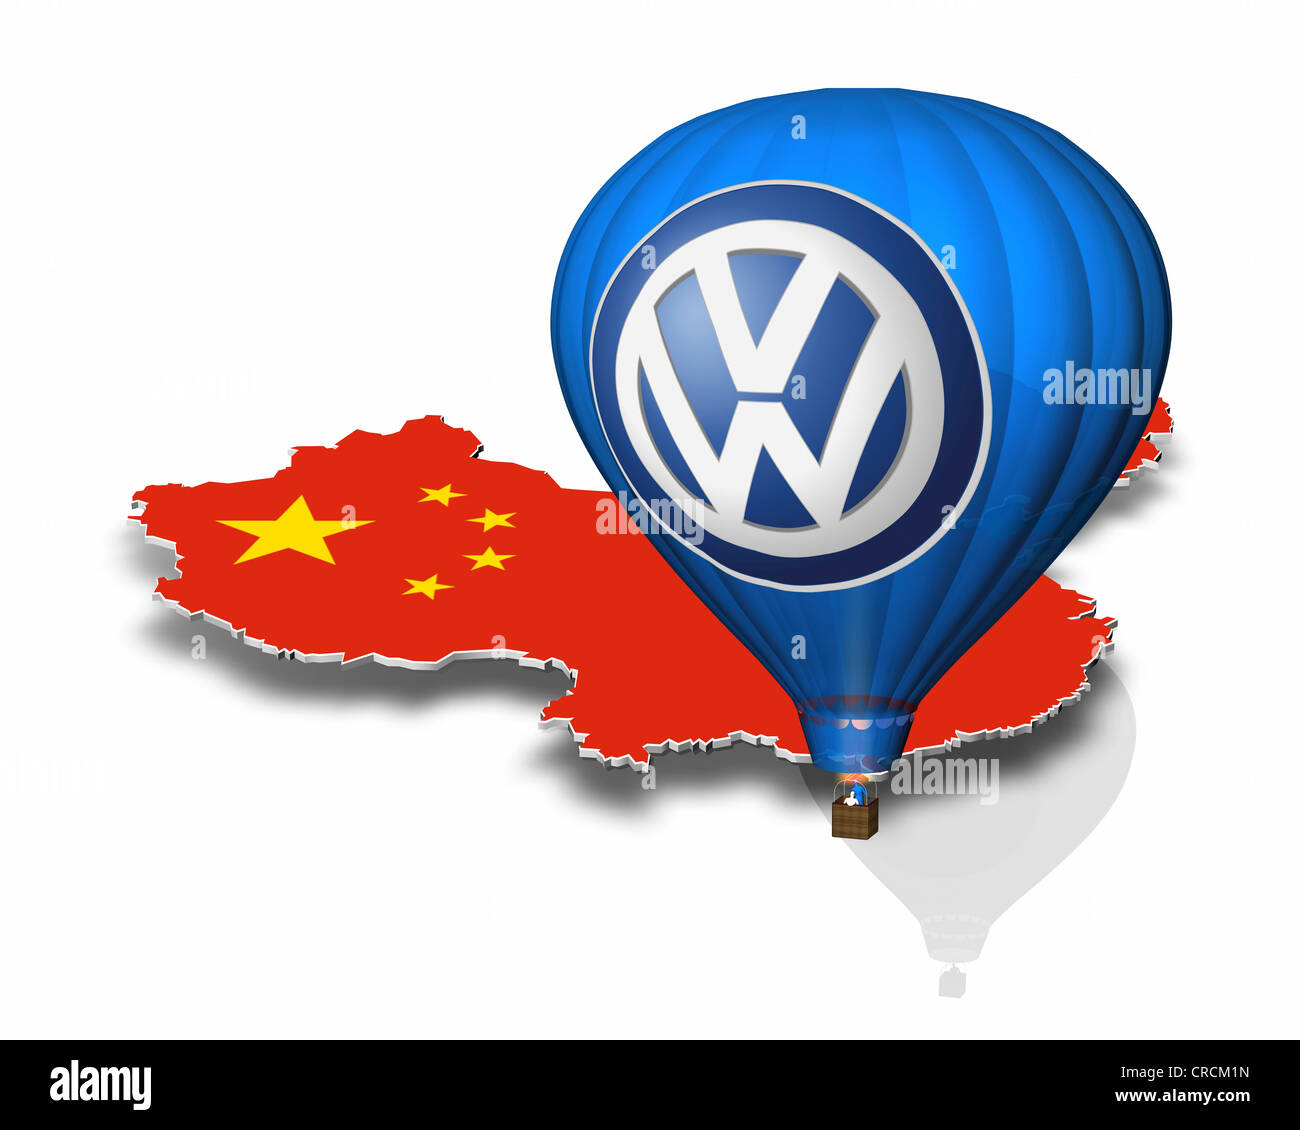 Aperçu de la Chine, montgolfière, logo de Volkswagen Banque D'Images